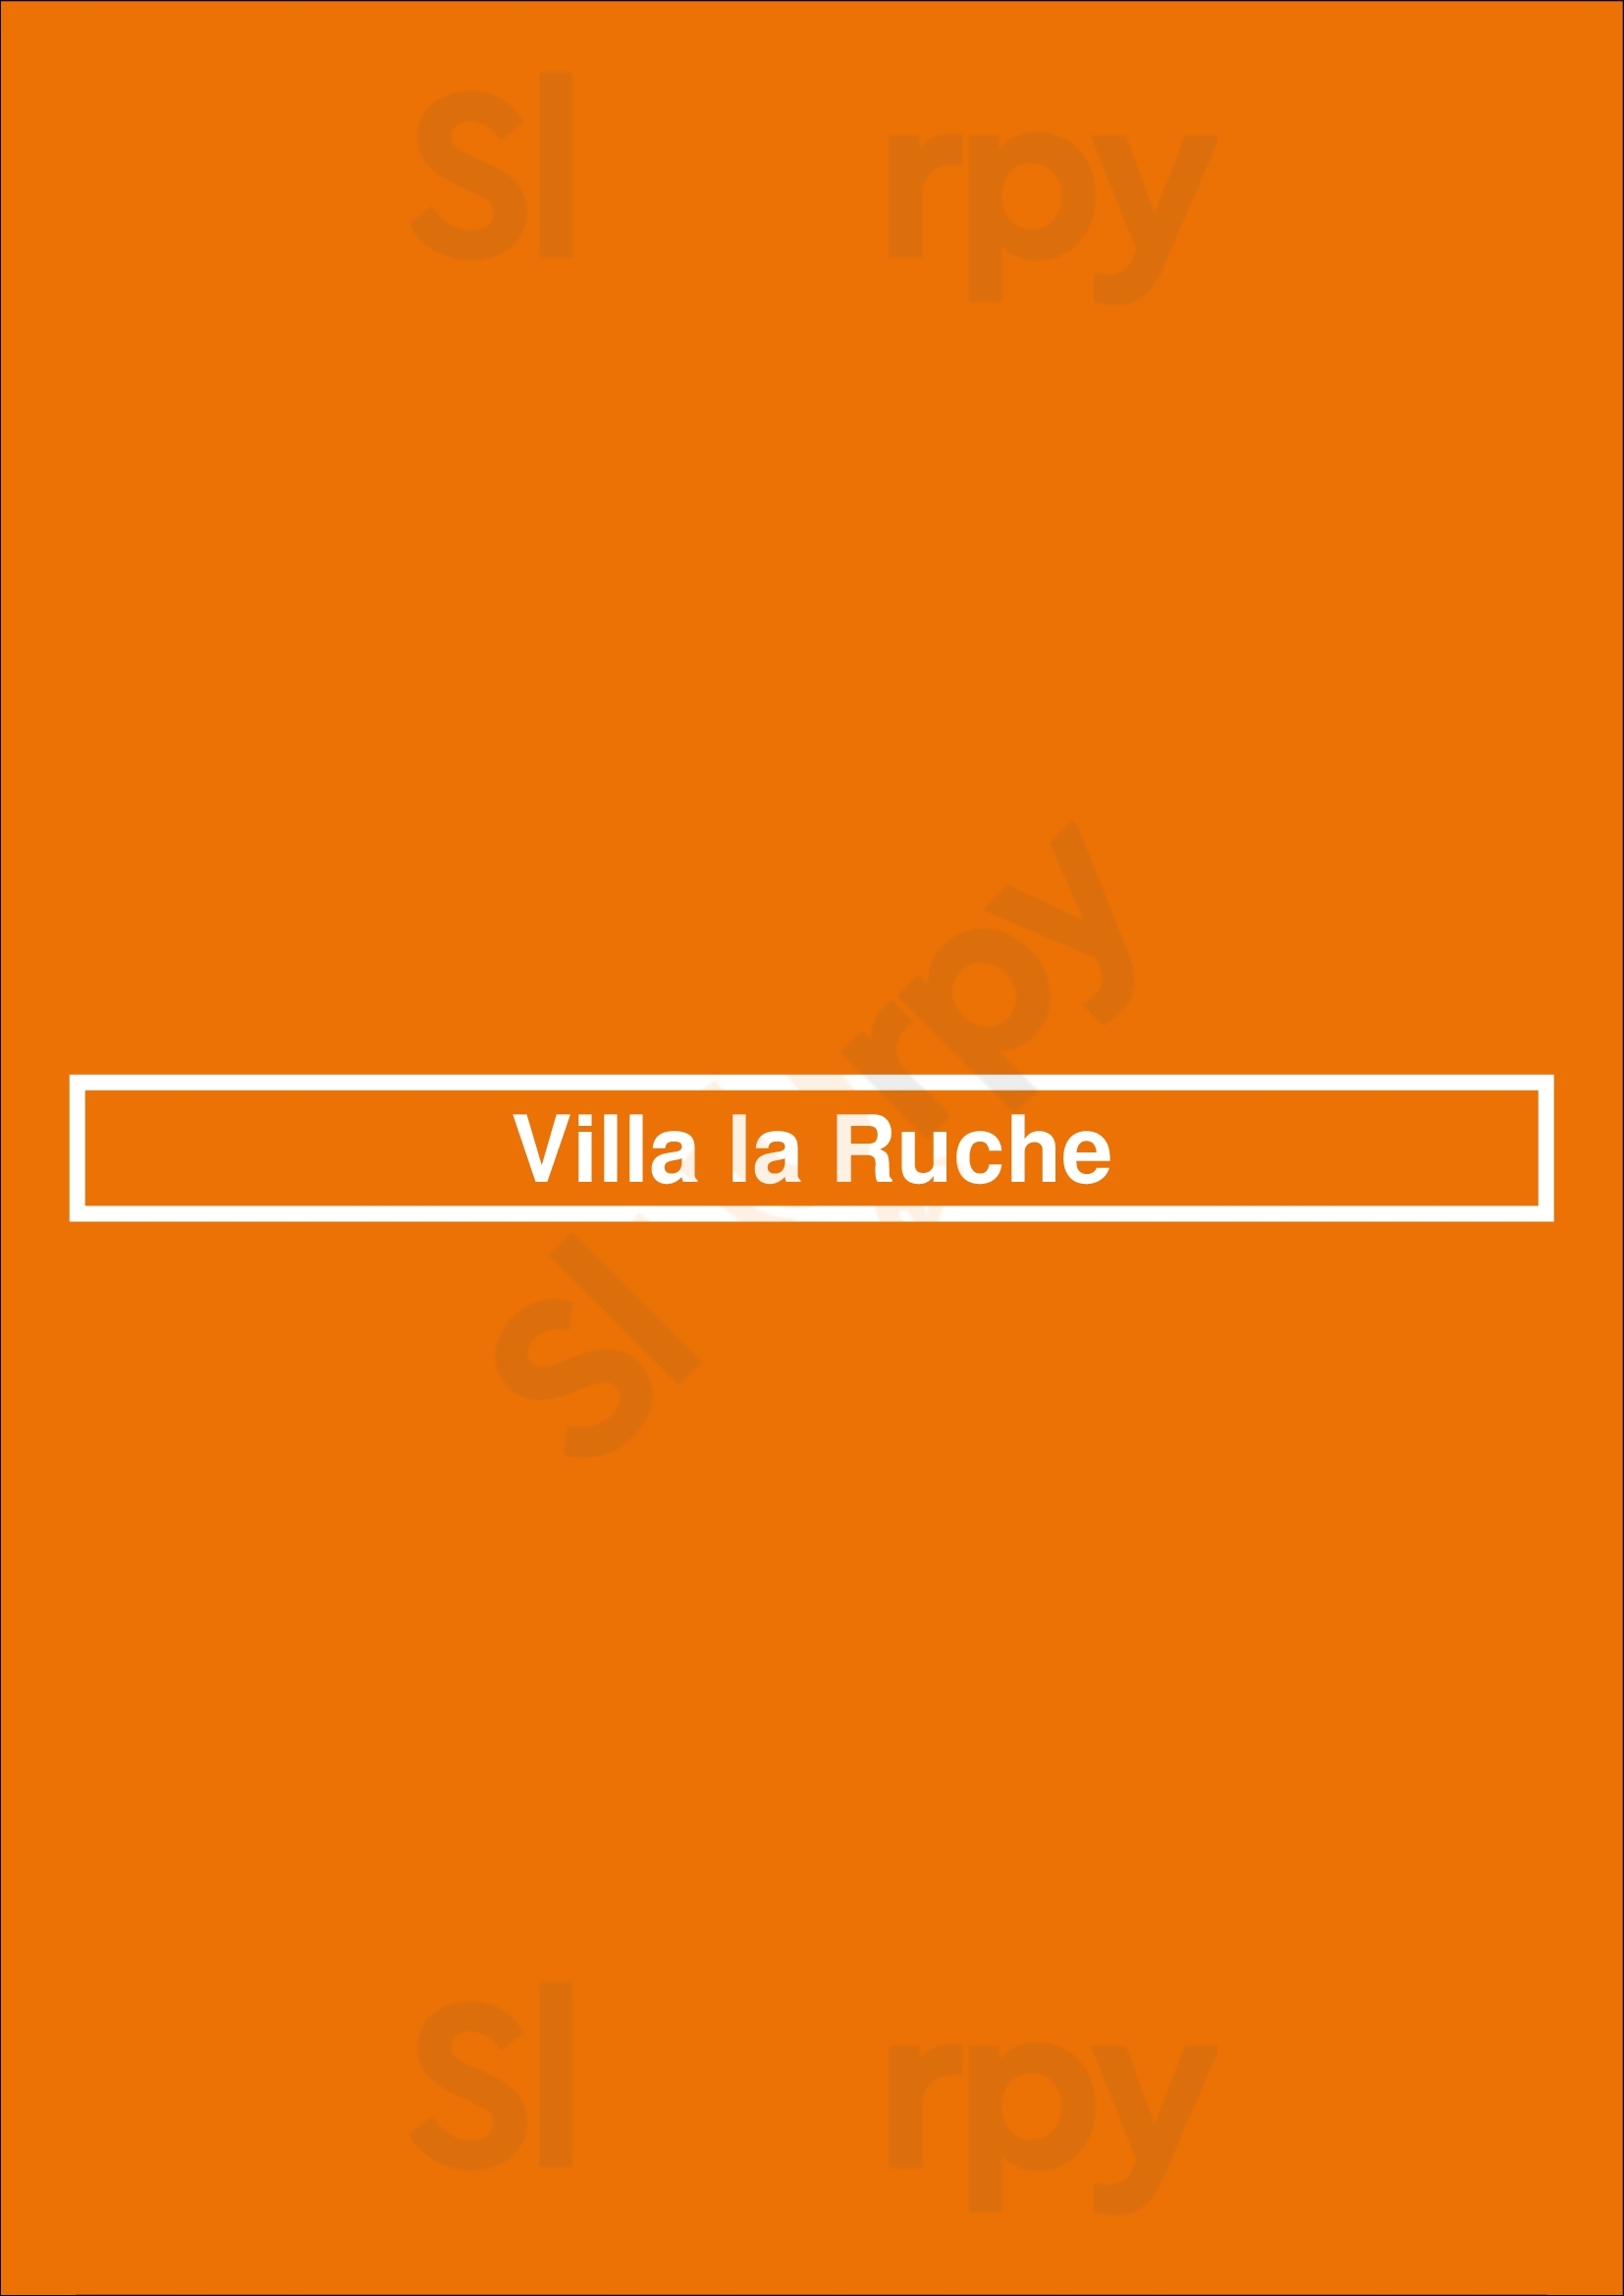 Villa La Ruche Voorburg Menu - 1